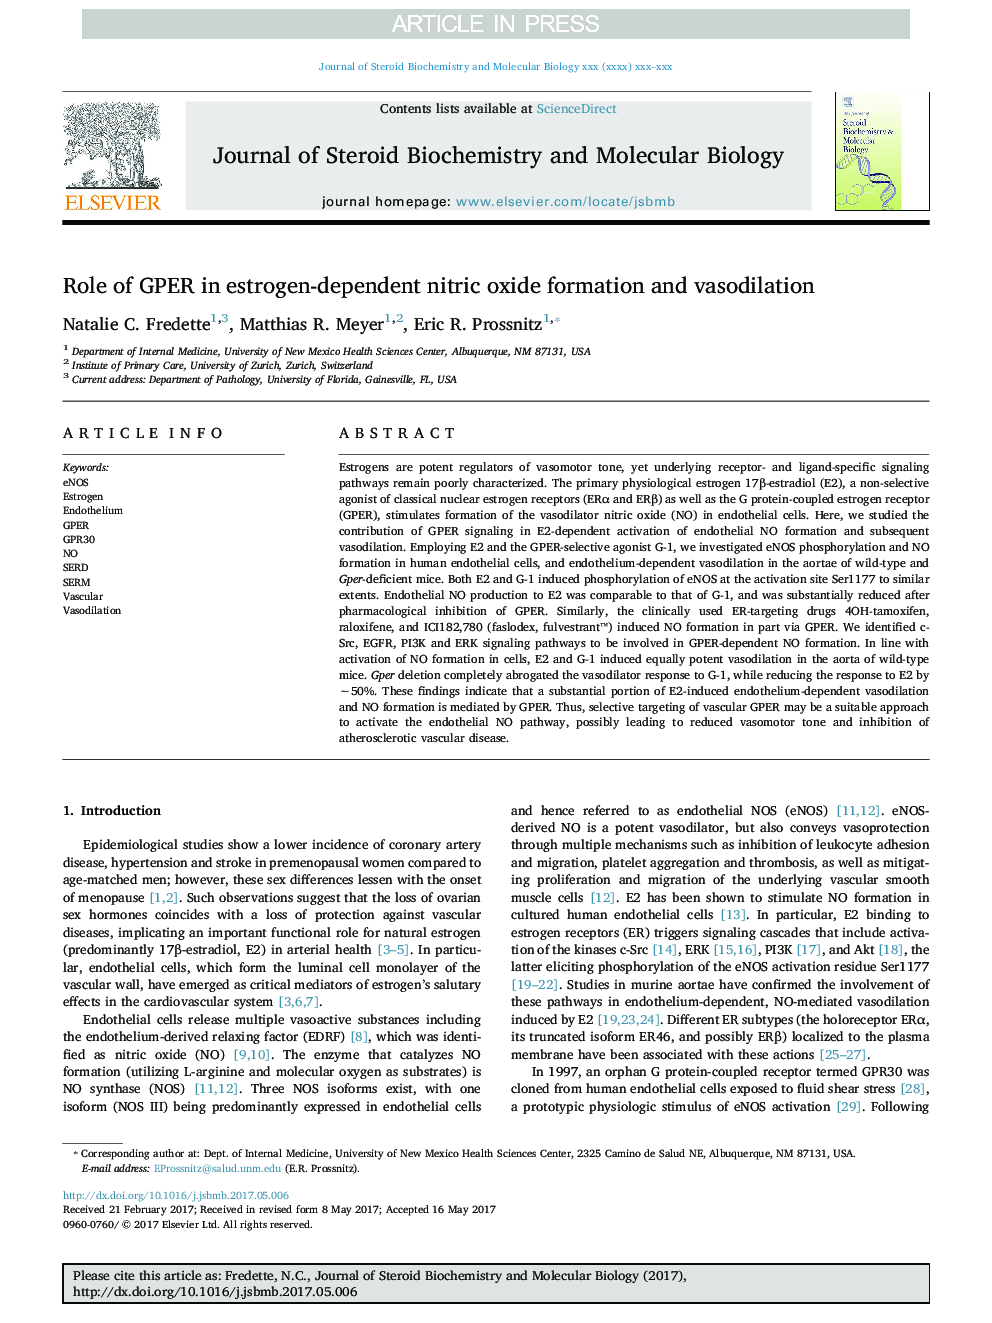 Role of GPER in estrogen-dependent nitric oxide formation and vasodilation